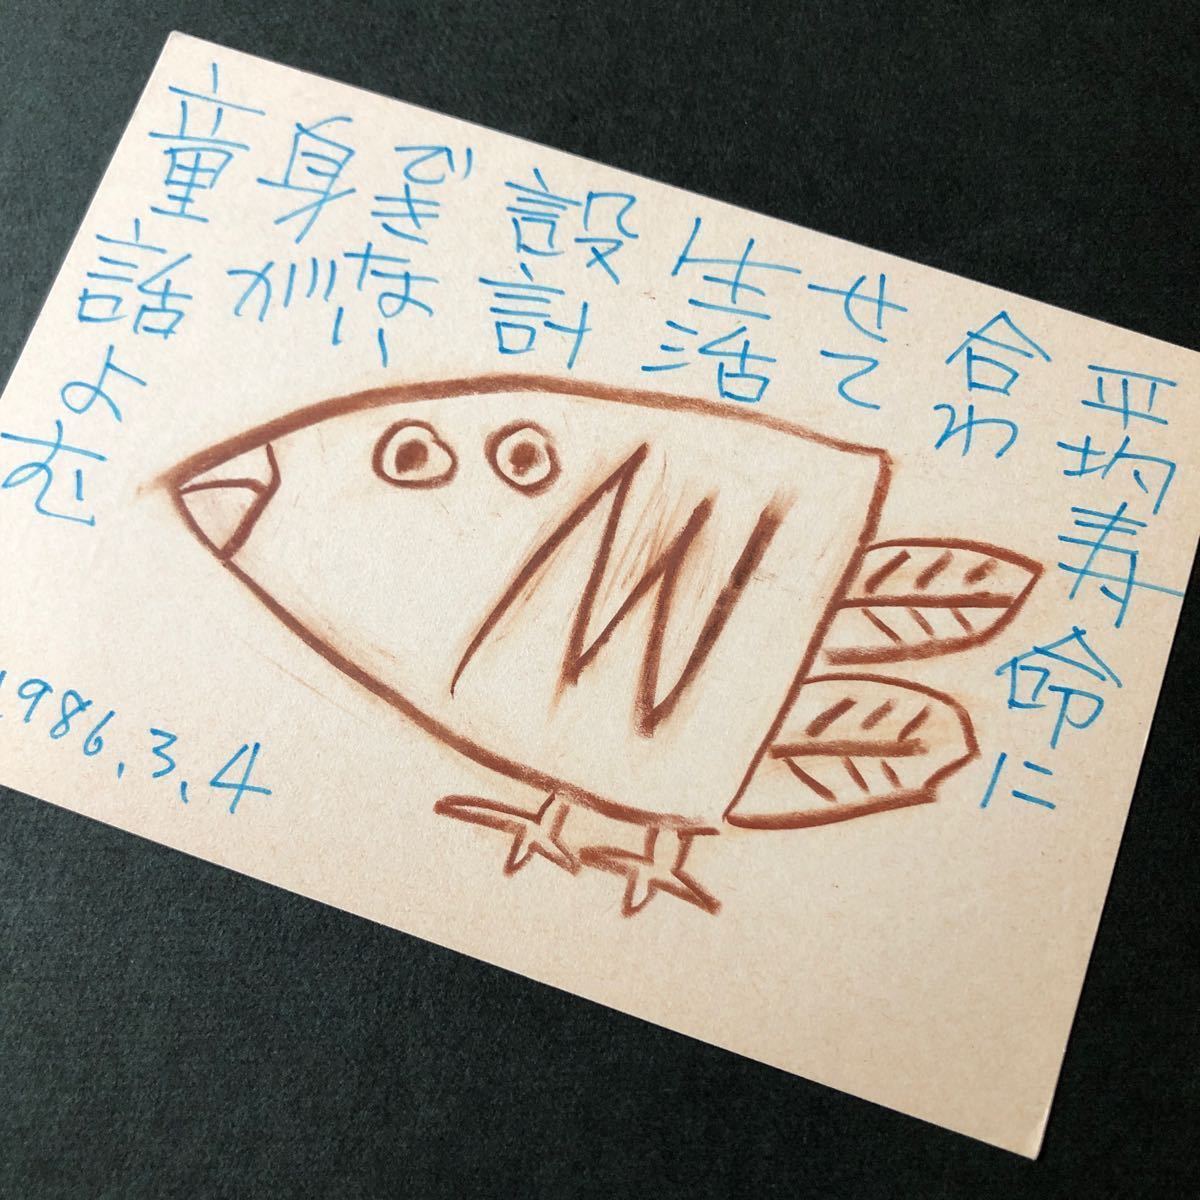 ◆1986, Kiyoharu Yamada, lettre illustrée peinte à la main, adressé au Bunka Publishing Bureau, Ginka trimestriel, poésie et peinture, authentique ◆ Carte postale, Kyoto, oiseau, Peinture, aquarelle, autres